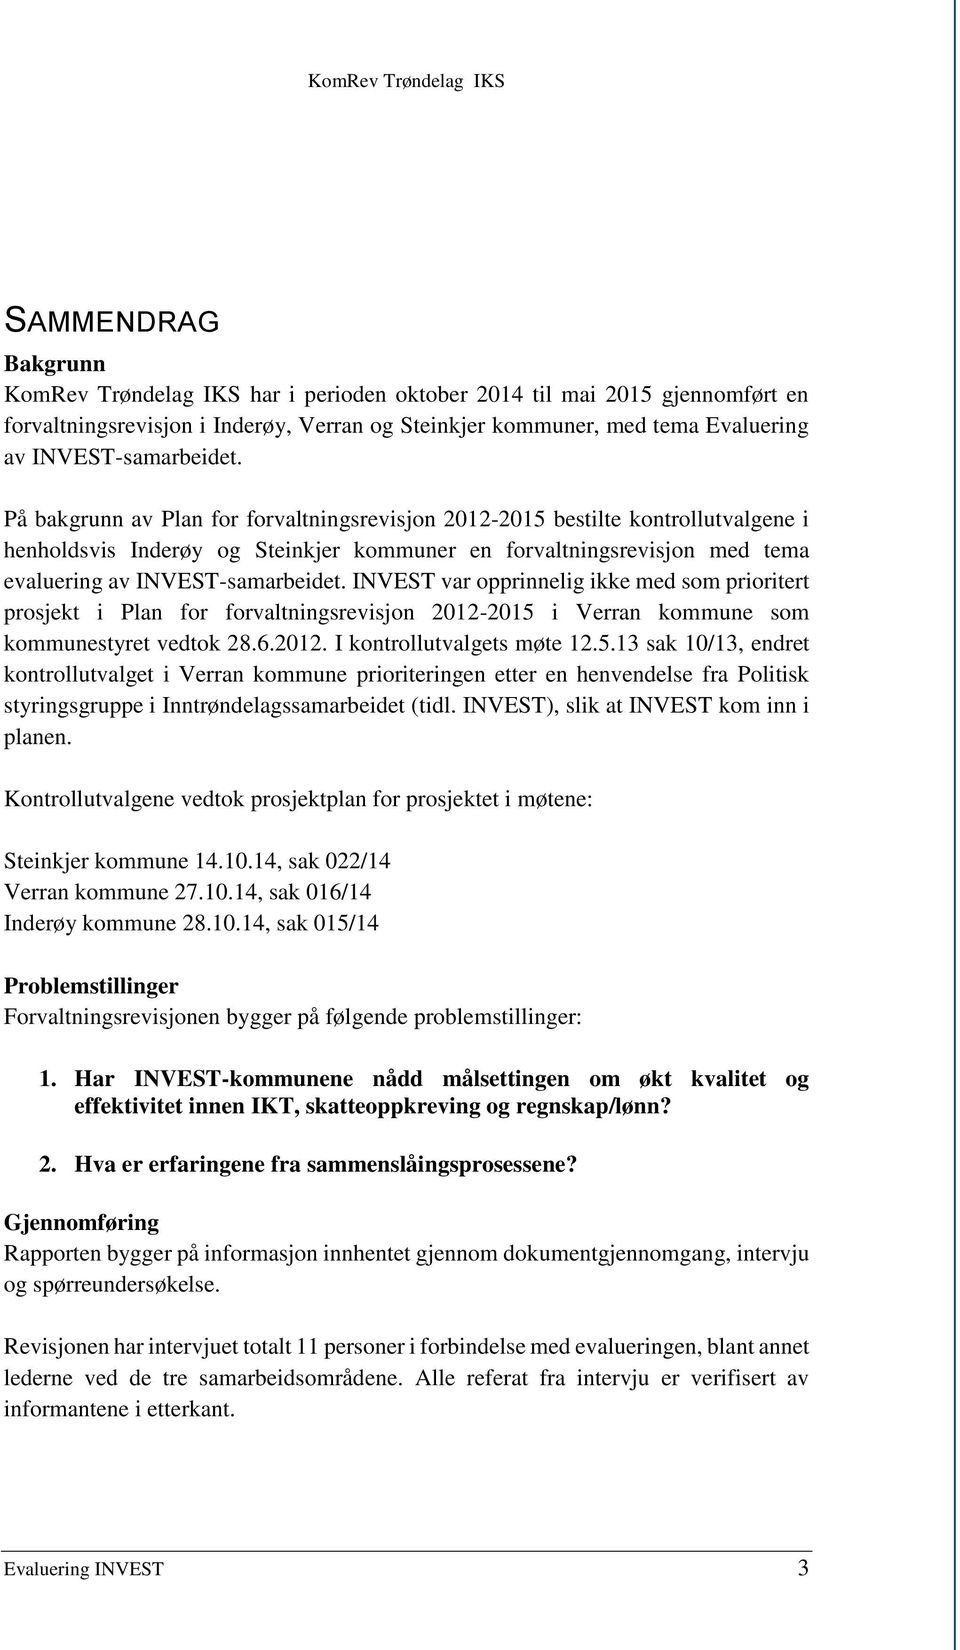 På bakgrunn av Plan for forvaltningsrevisjon 2012-2015 bestilte kontrollutvalgene i henholdsvis Inderøy og Steinkjer kommuner en forvaltningsrevisjon med tema evaluering av  INVEST var opprinnelig